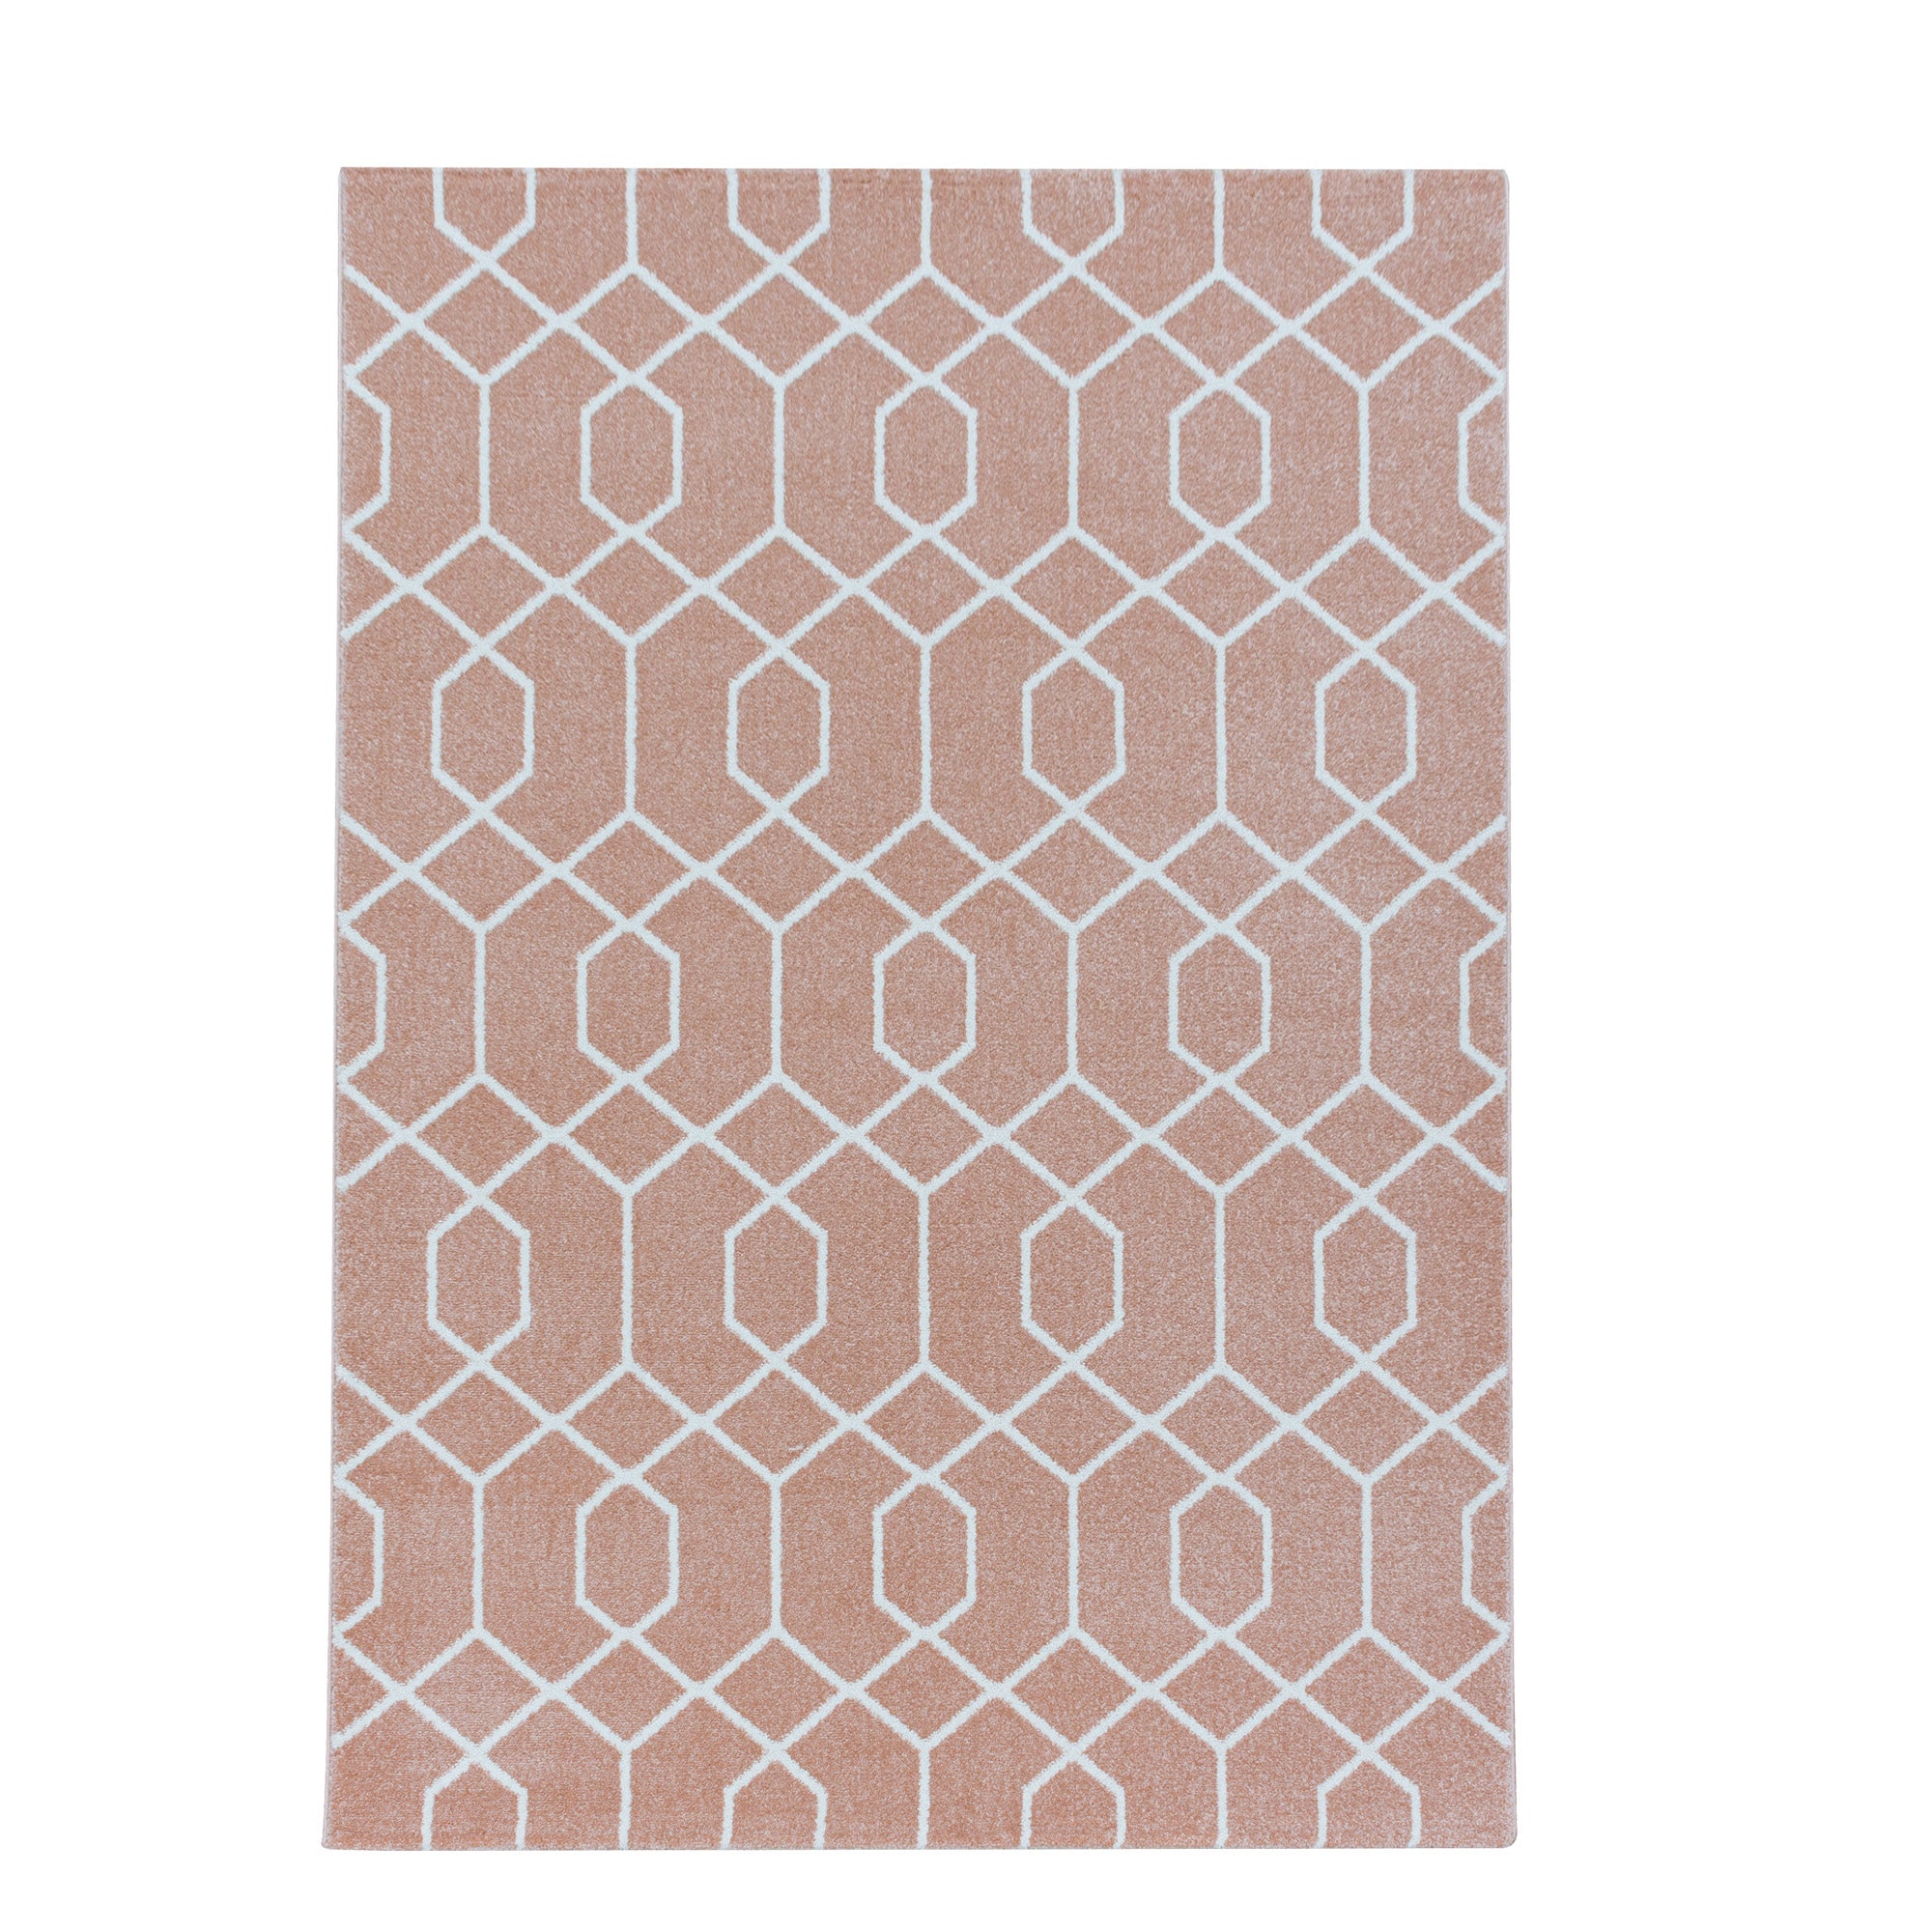 Kurzflor Cable Design Teppich Wohnzimmerteppich Zopf Muster Linien Soft Rose